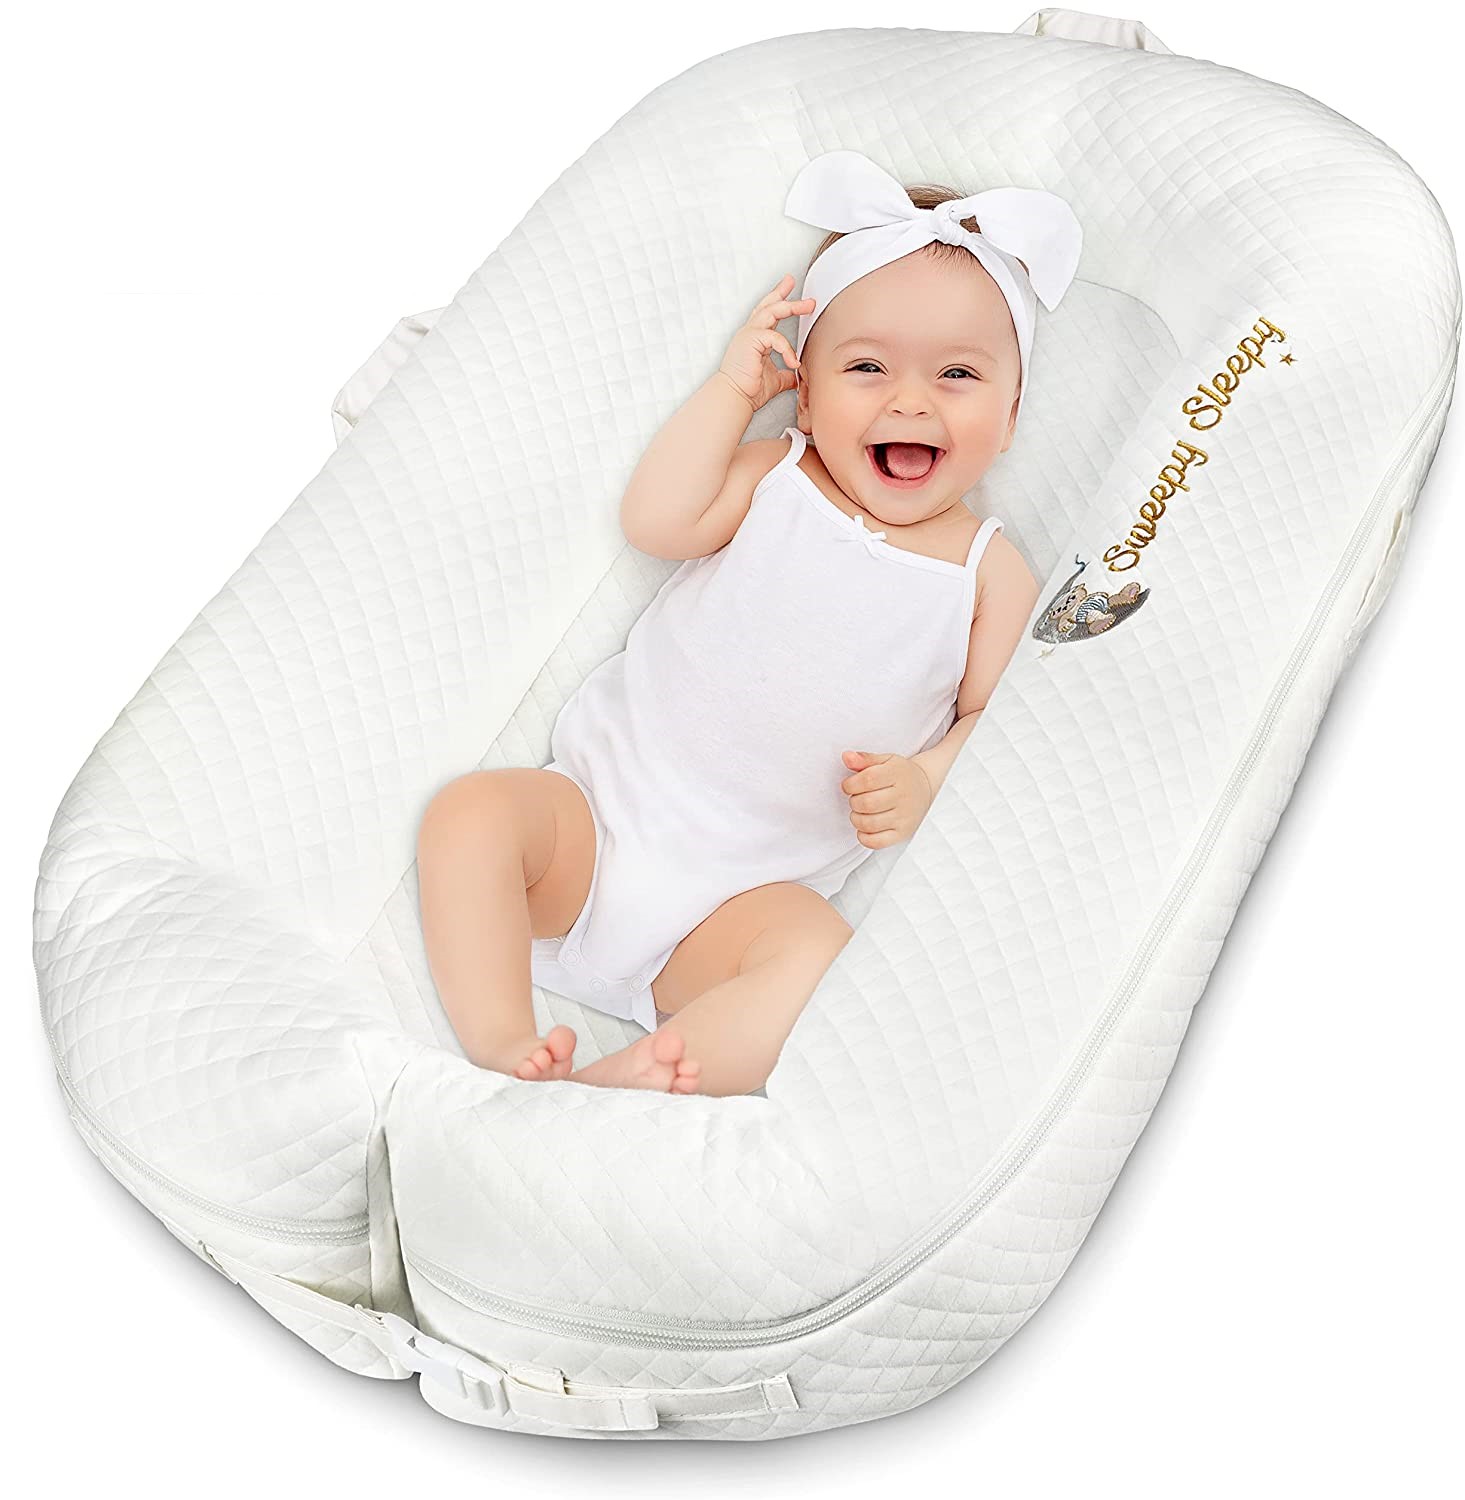 Sweepy Sleepy Baby Lounger Nest Bed For Co-Sleeping